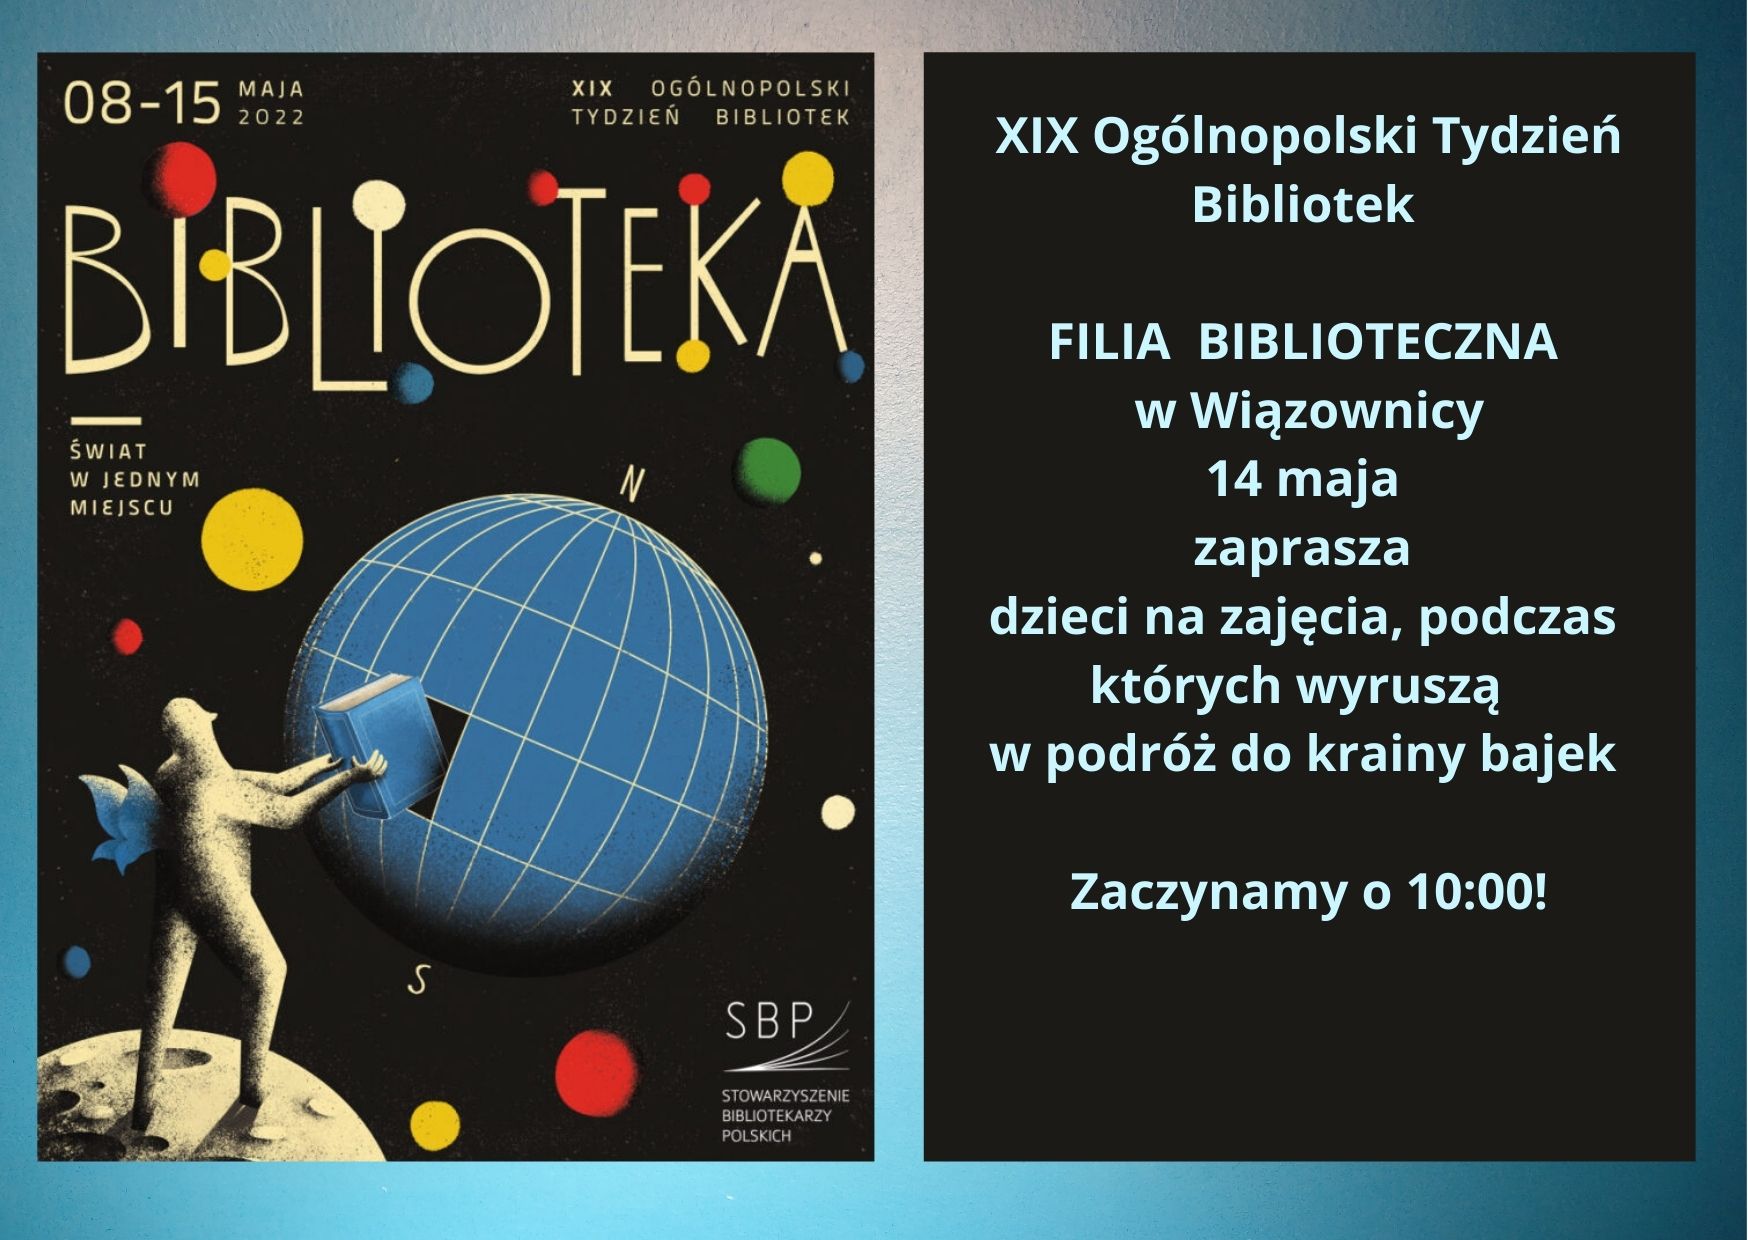  XIX Ogólnopolski Tydzień Bibliotek 